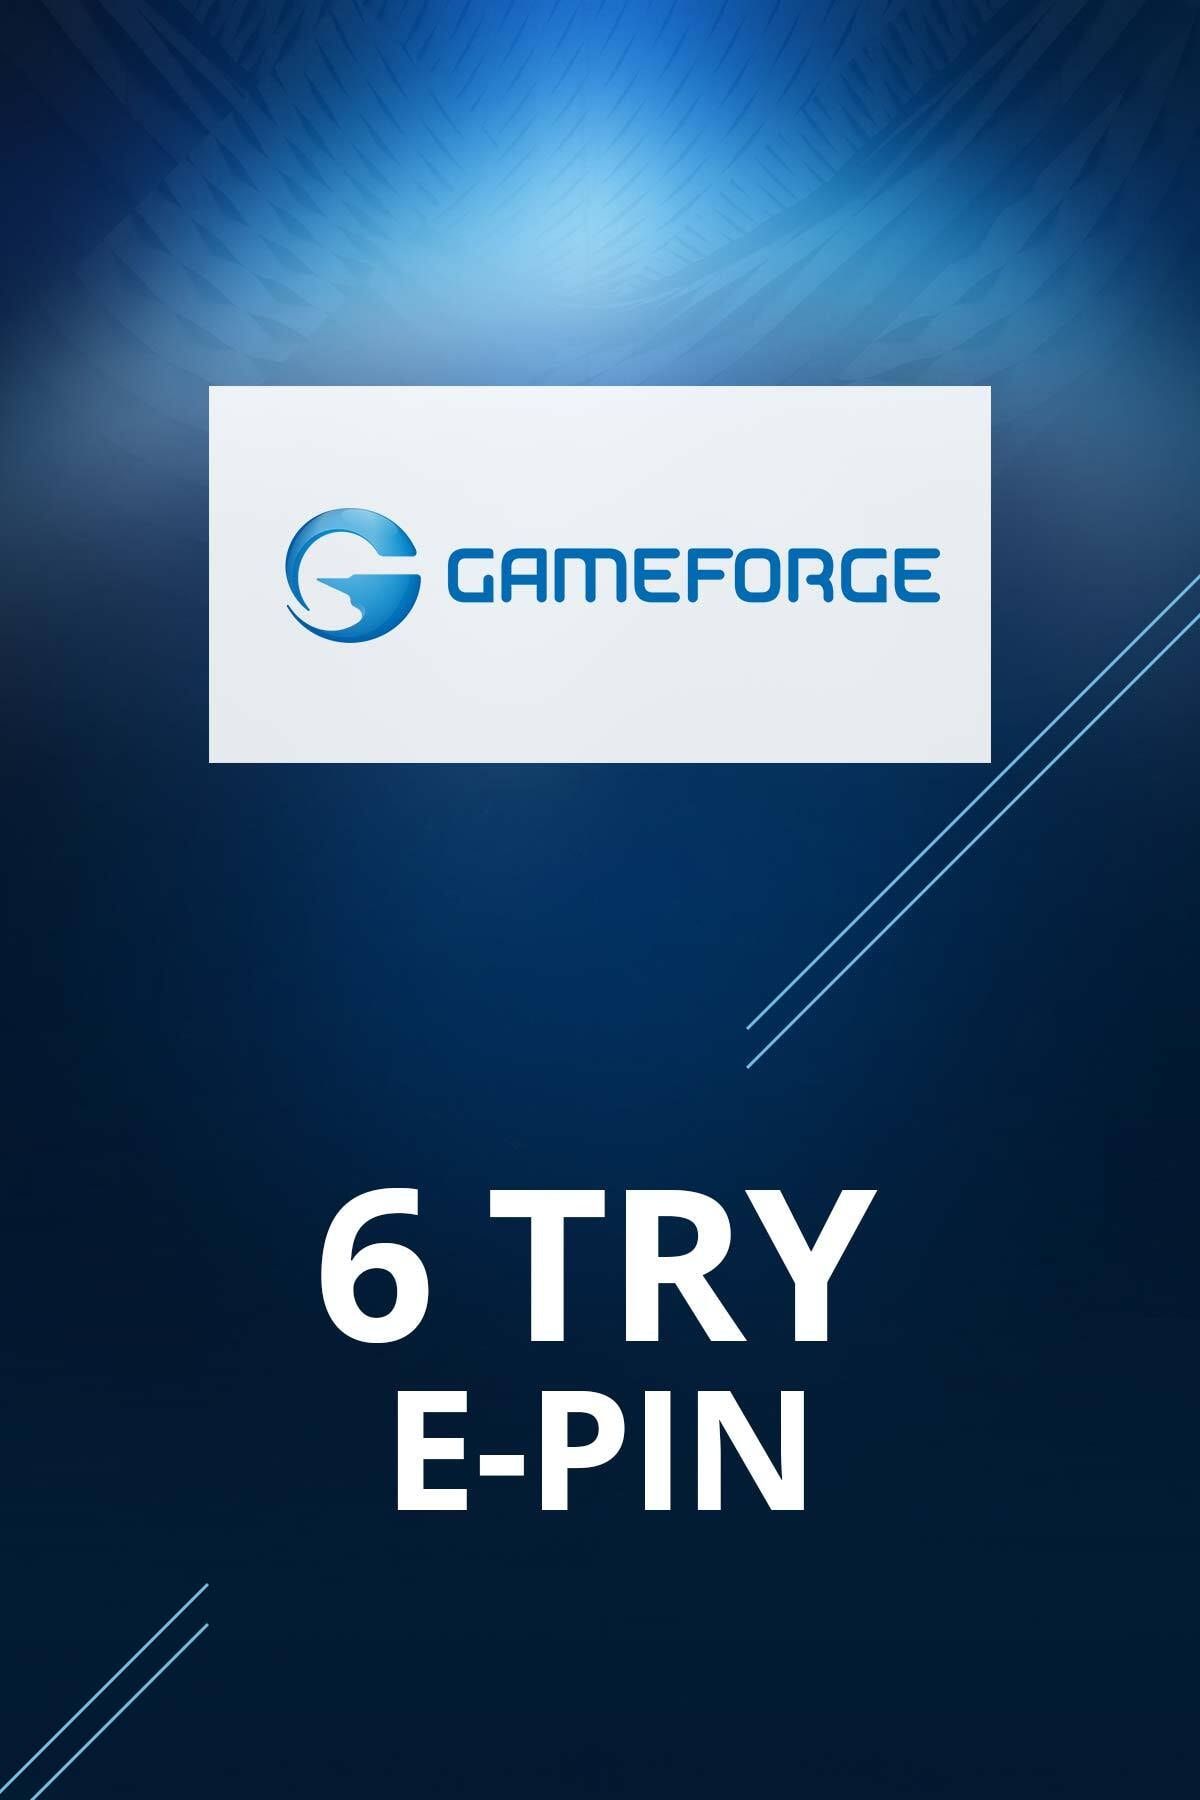 Gameforge 6 TL E-pin